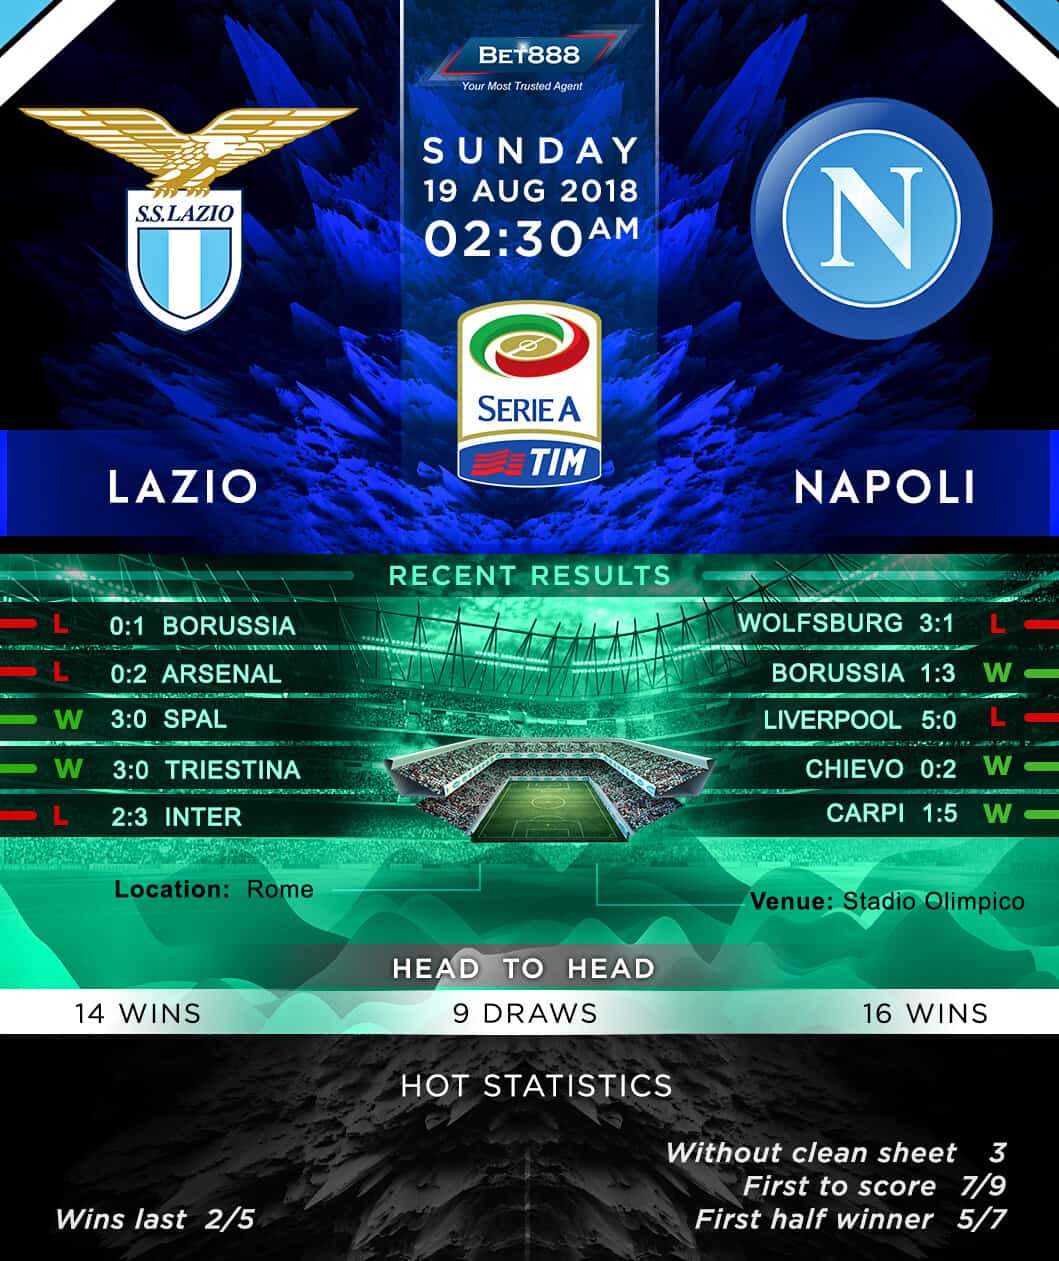 Lazio vs Napoli 19/08/18